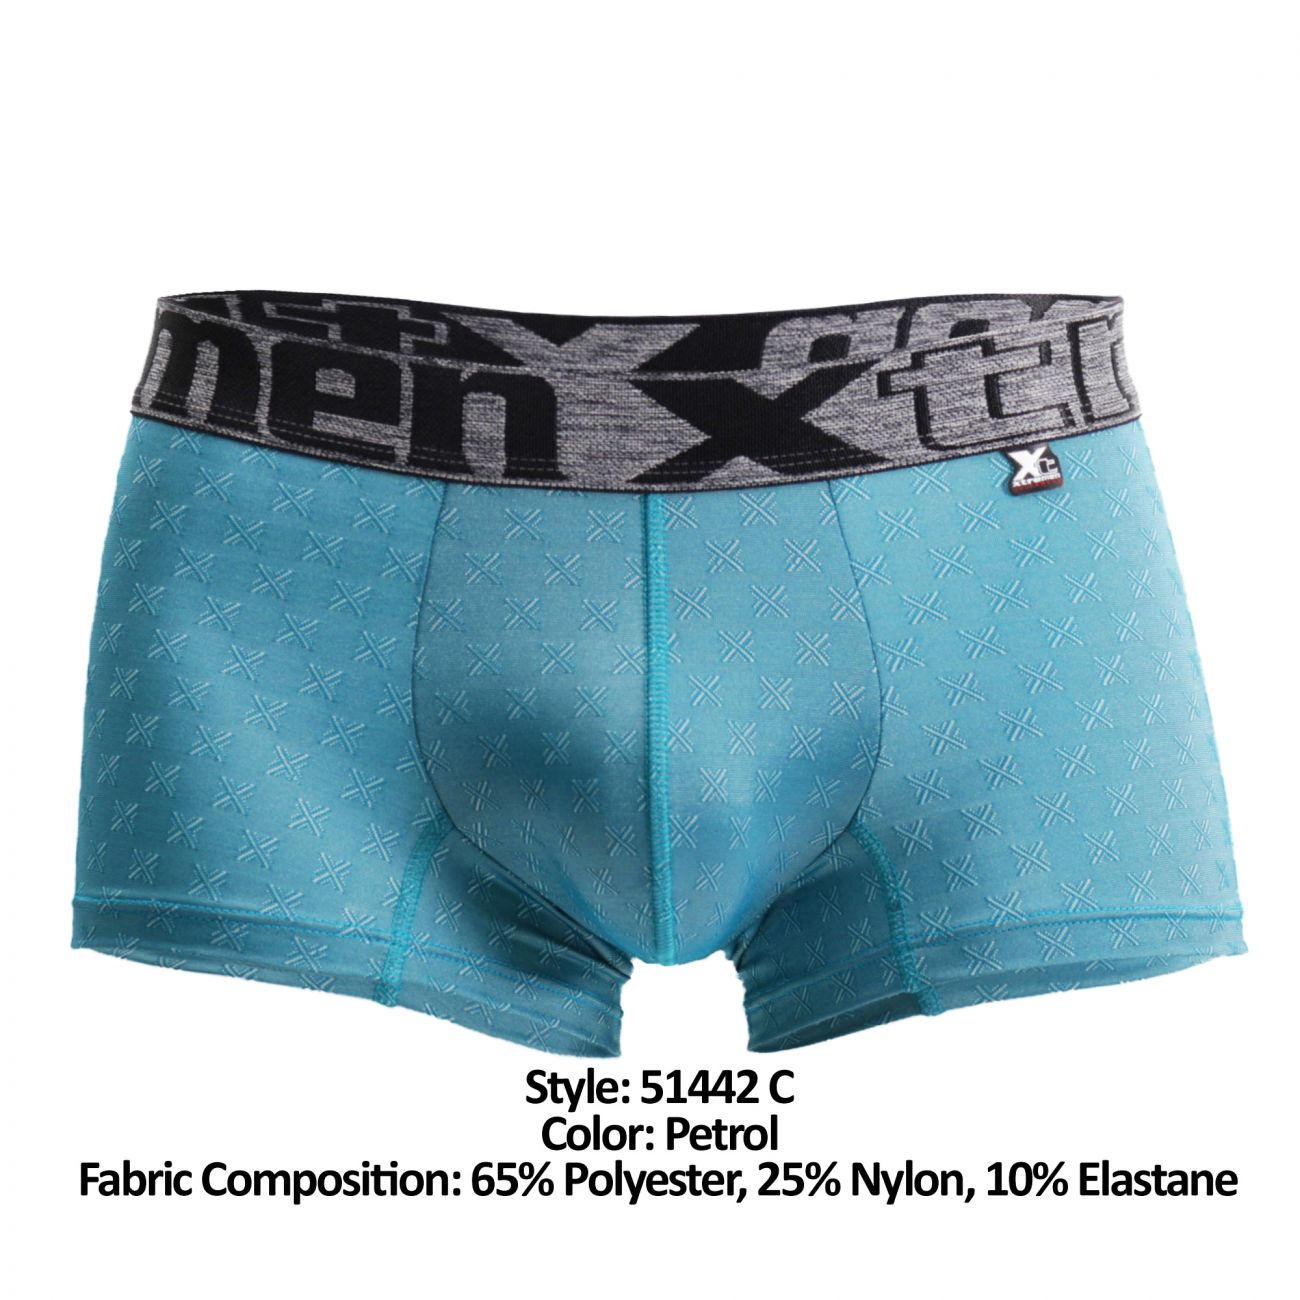 Mens Underwear: Xtremen 51442C Jacquard -X- Boxer Briefs | eBay